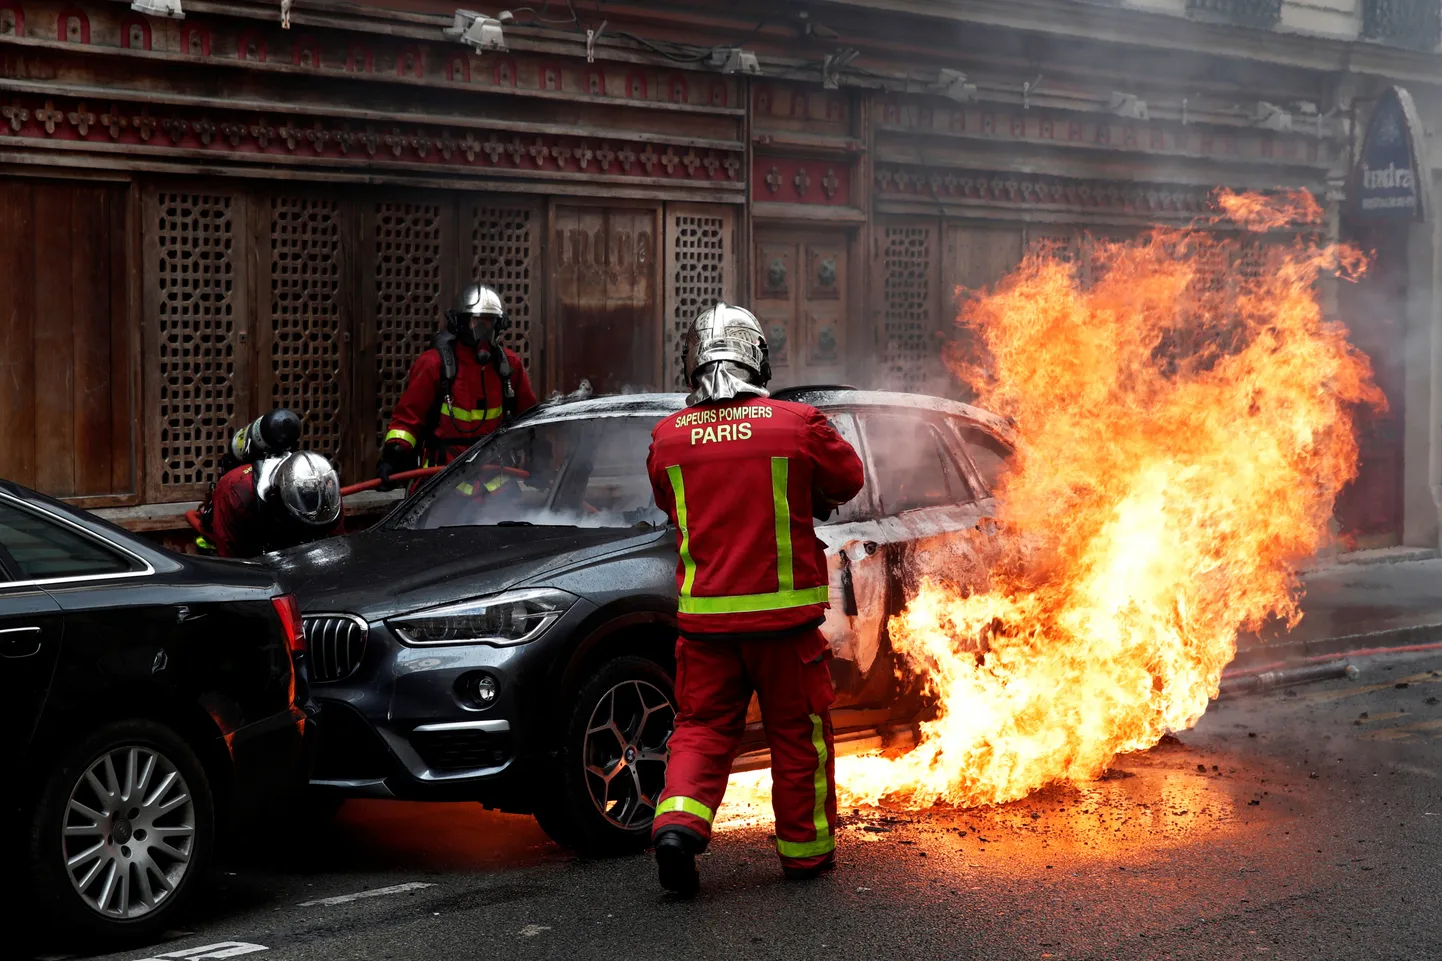 Parīzes ugunsdzēsēji dzēš "Dzelteno vestu" protestos aizdedzinātu automašīnu